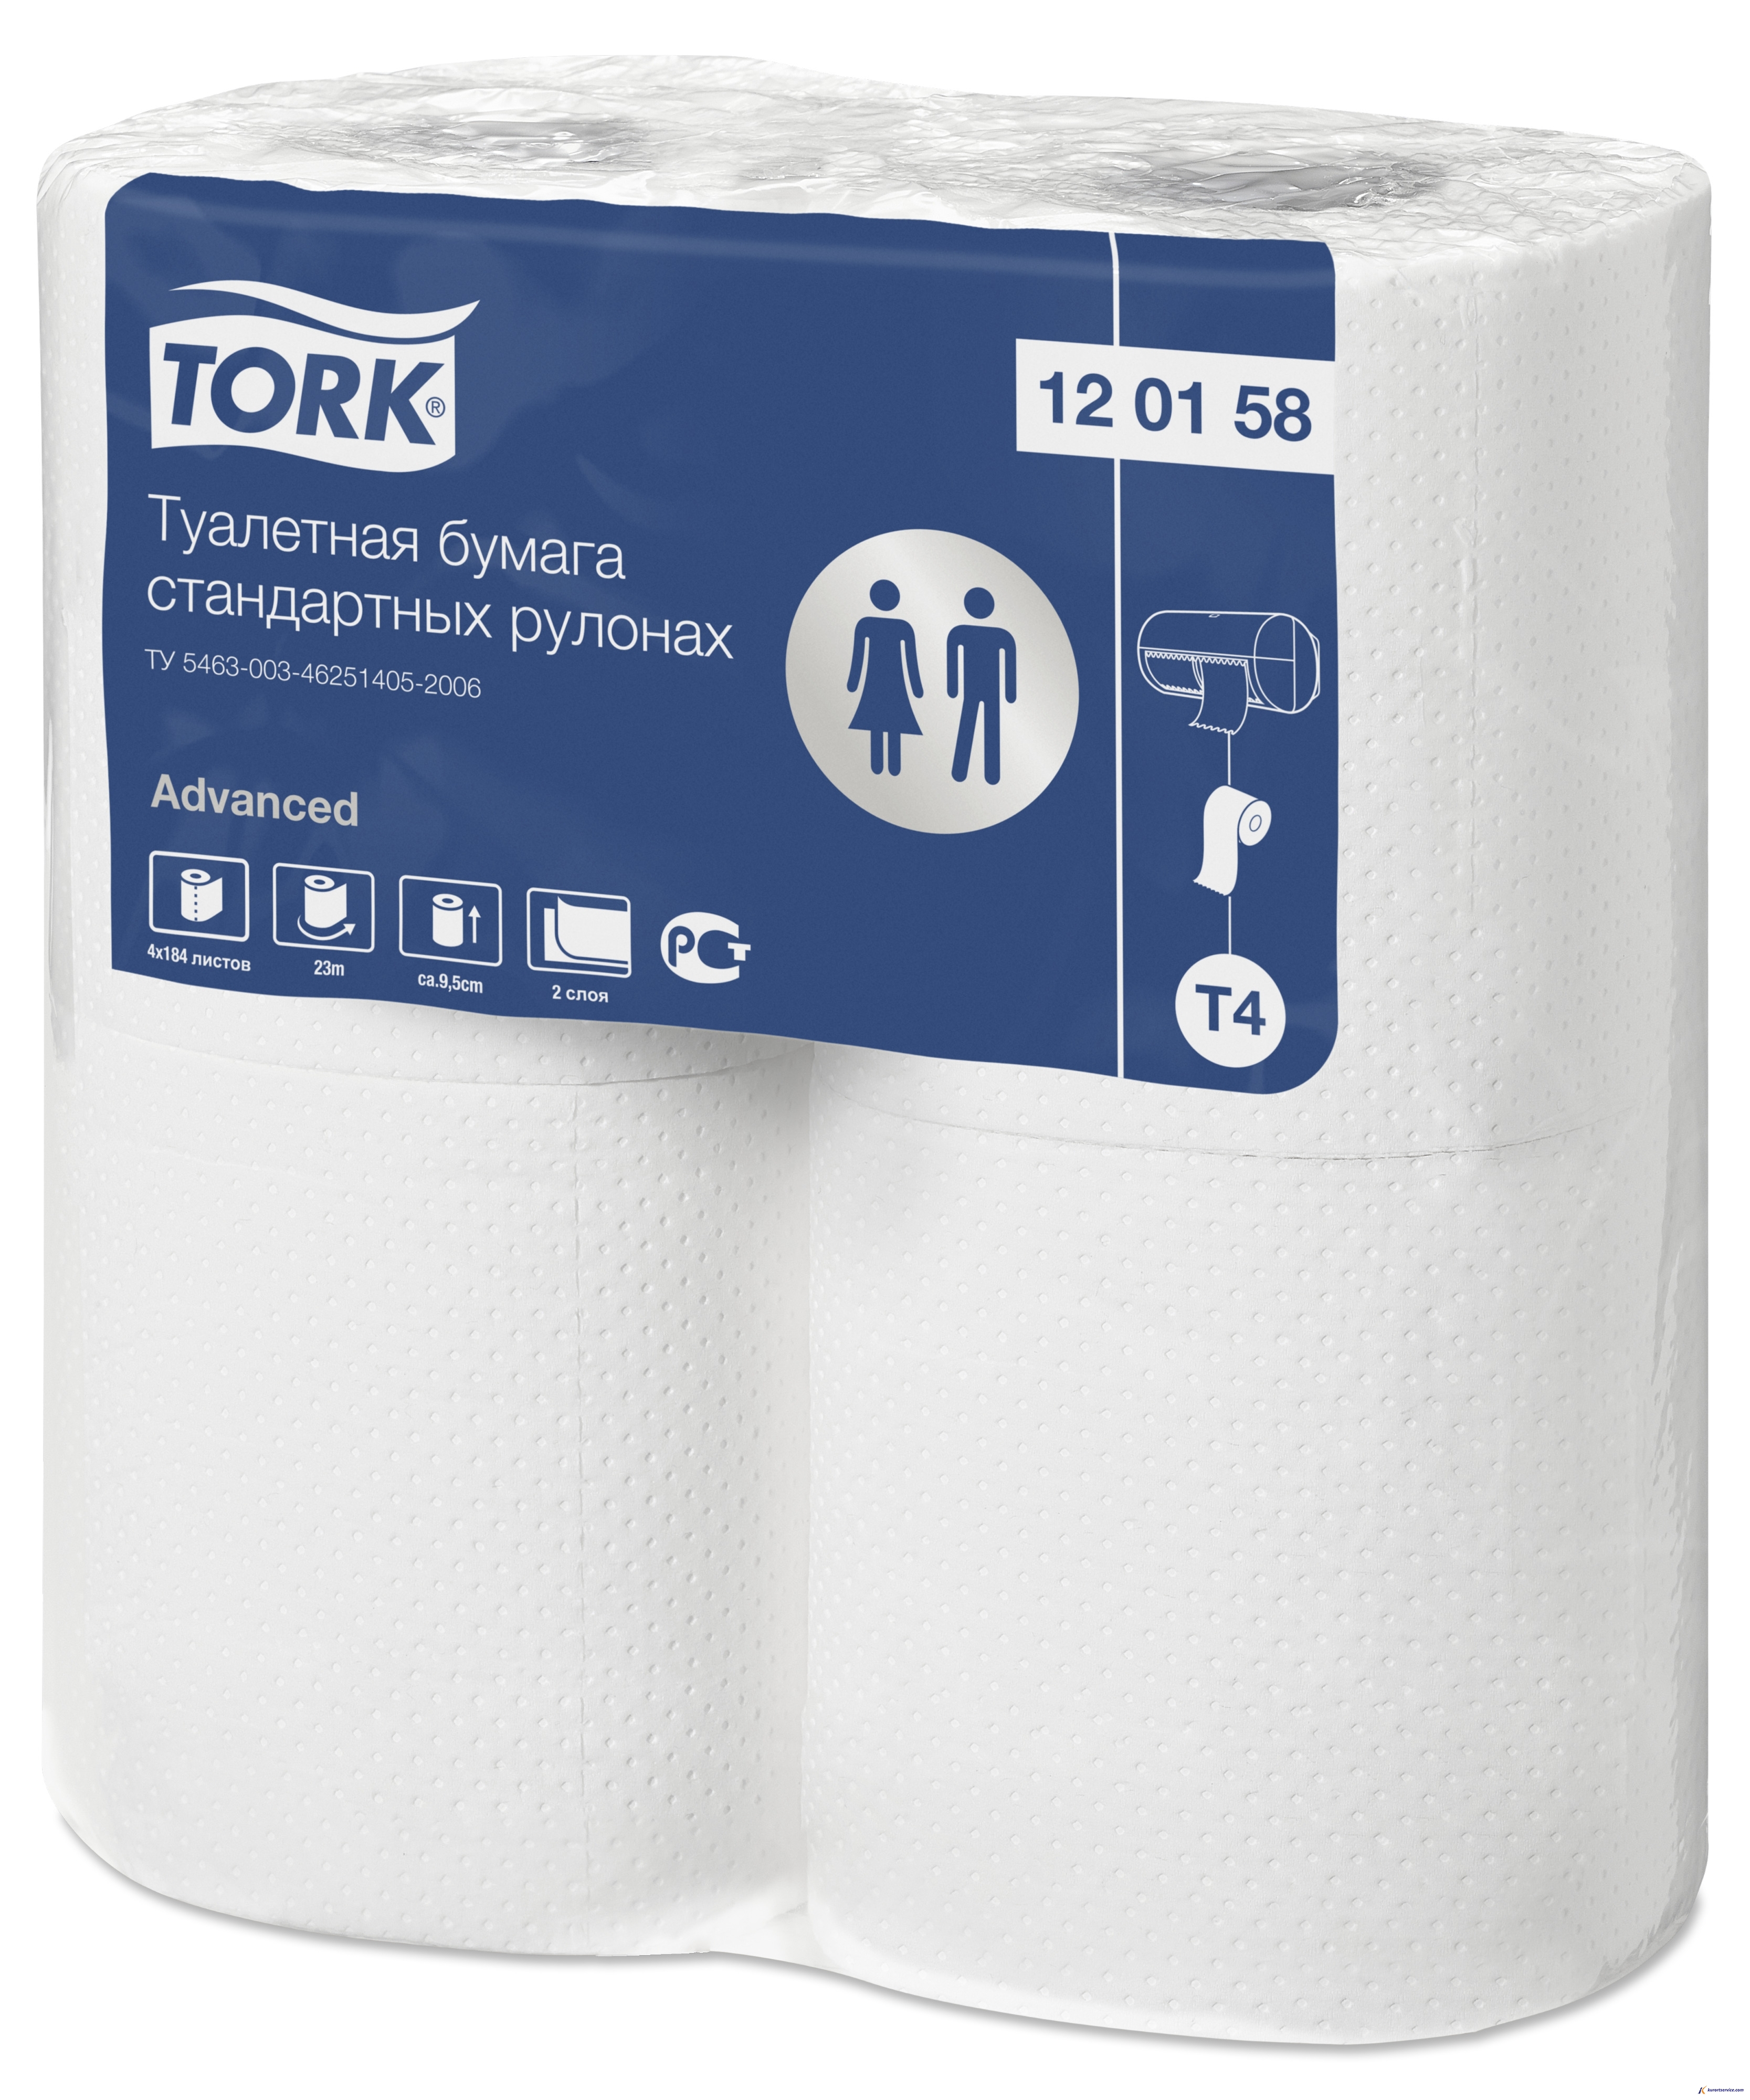 Tork Туалетная бумага в стандартных рулонах 2сл 23м T4 120158 купить в интернет-магазине Курорт Сервис